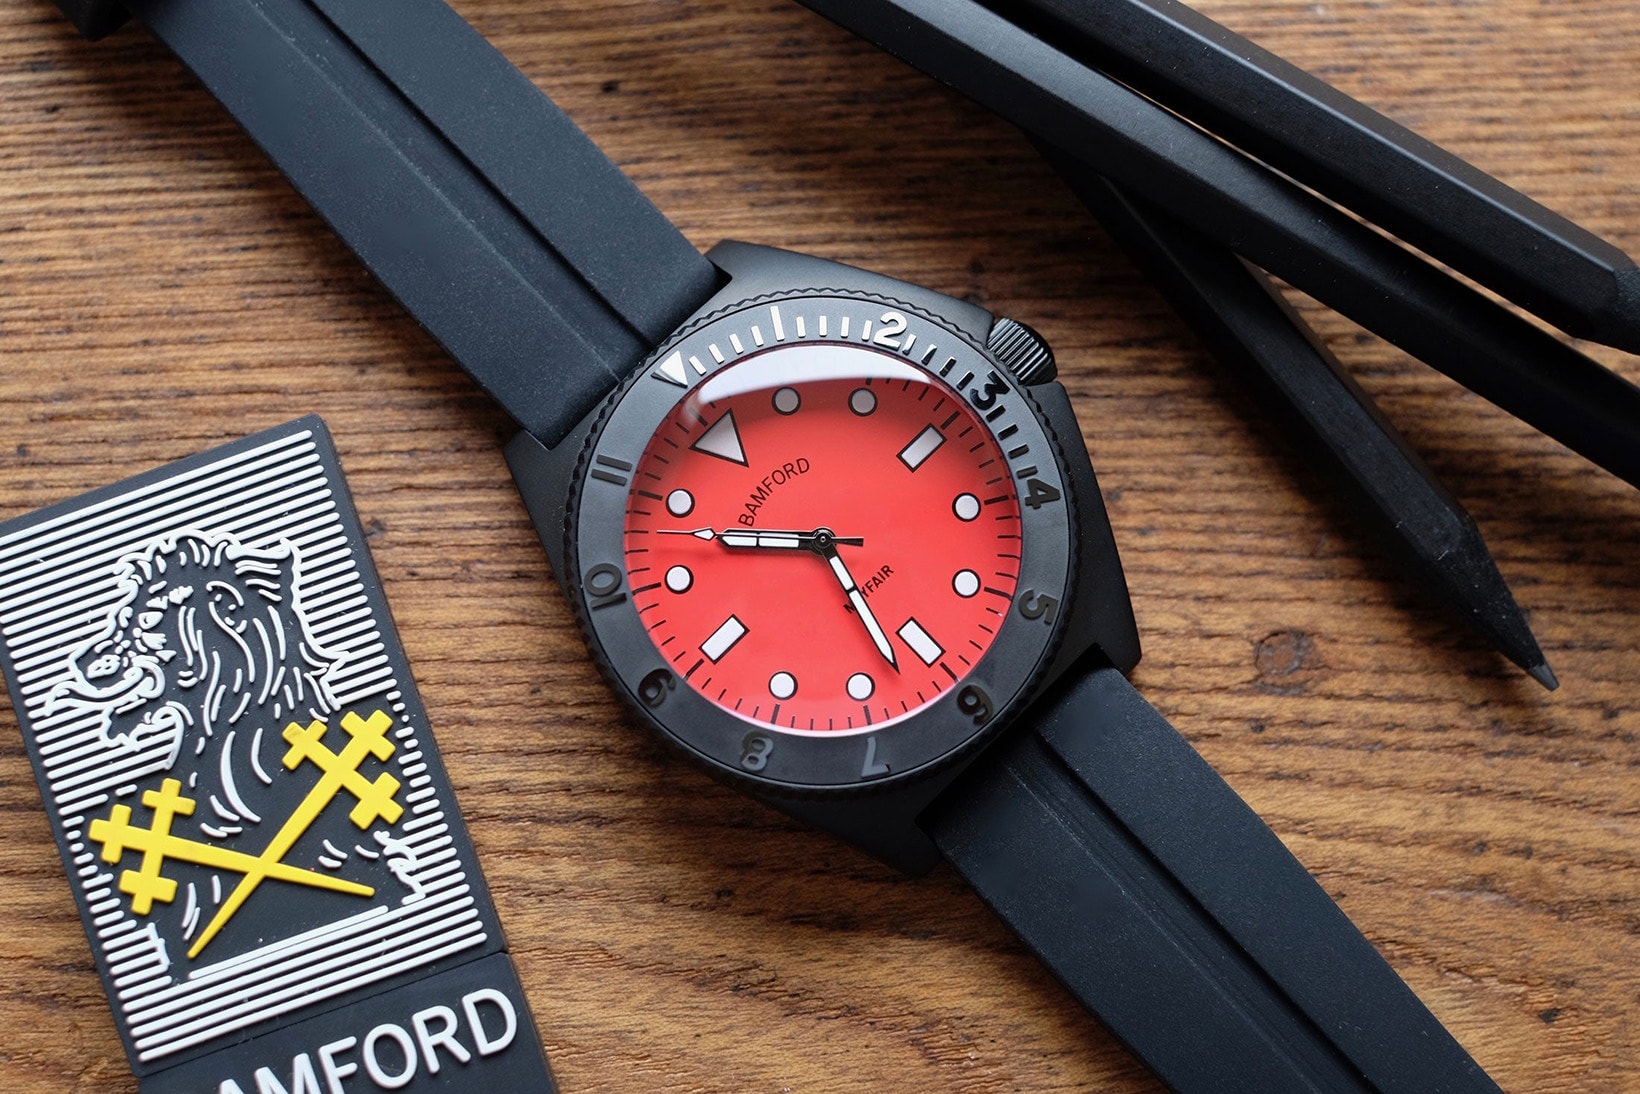 著名改錶單位 Bamford Watch Department 發佈首個自家品牌錶款「Mayfair」